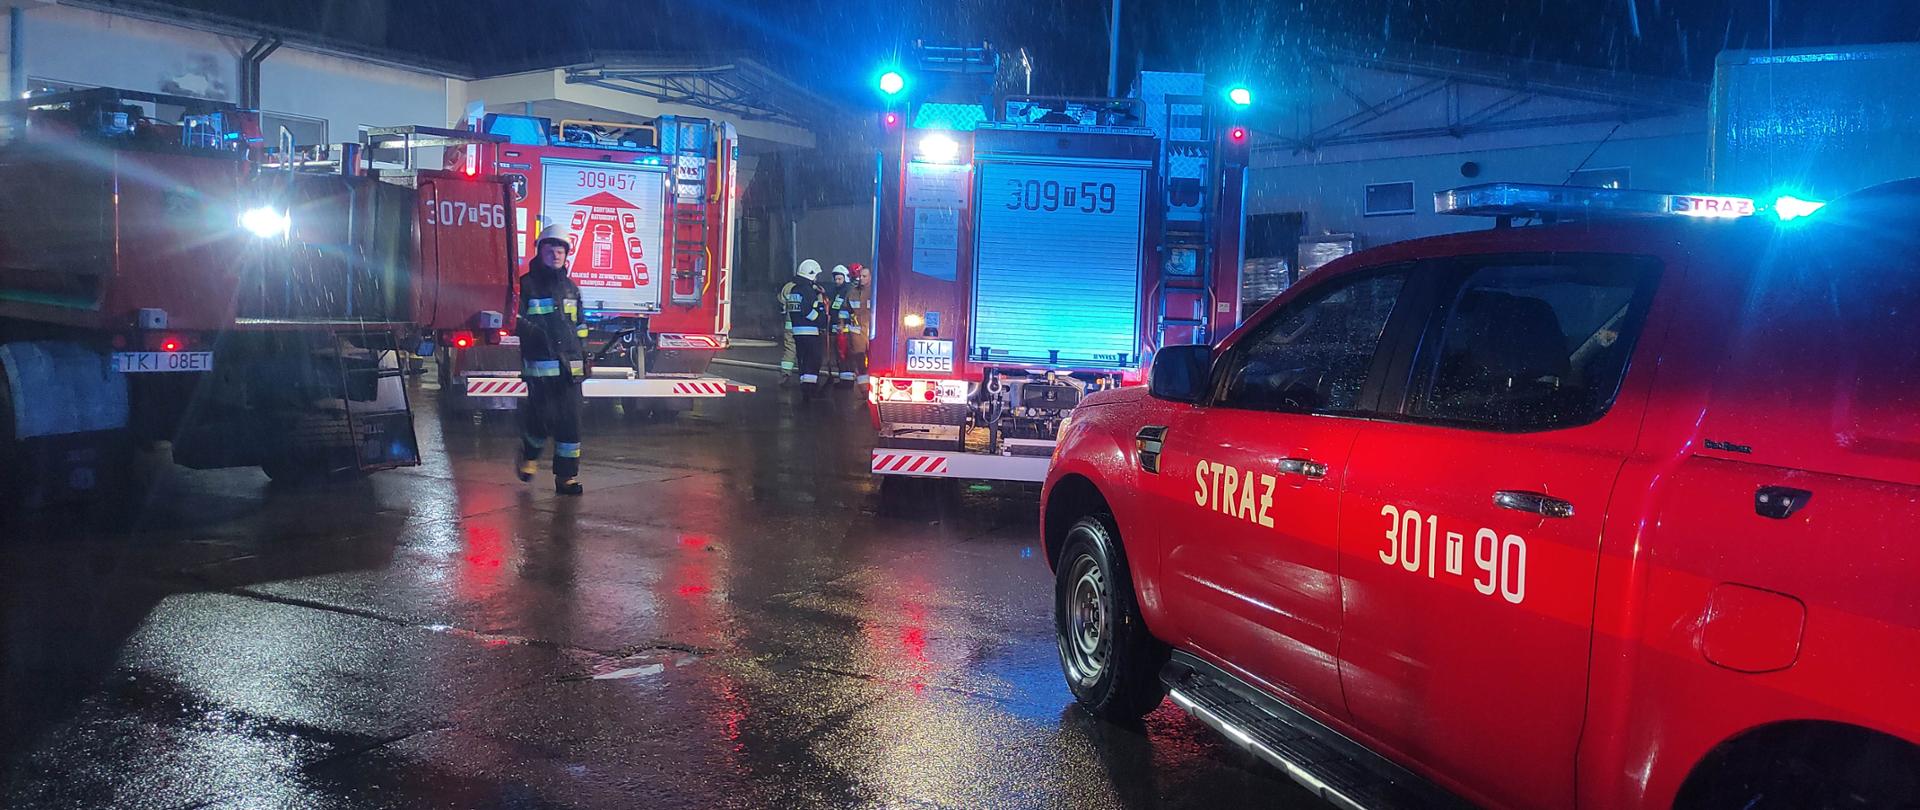 Zdjęcie przedstawia plac wewnętrzny piekarni na którym stoją cztery samochody pożarnicze oraz strażacy.